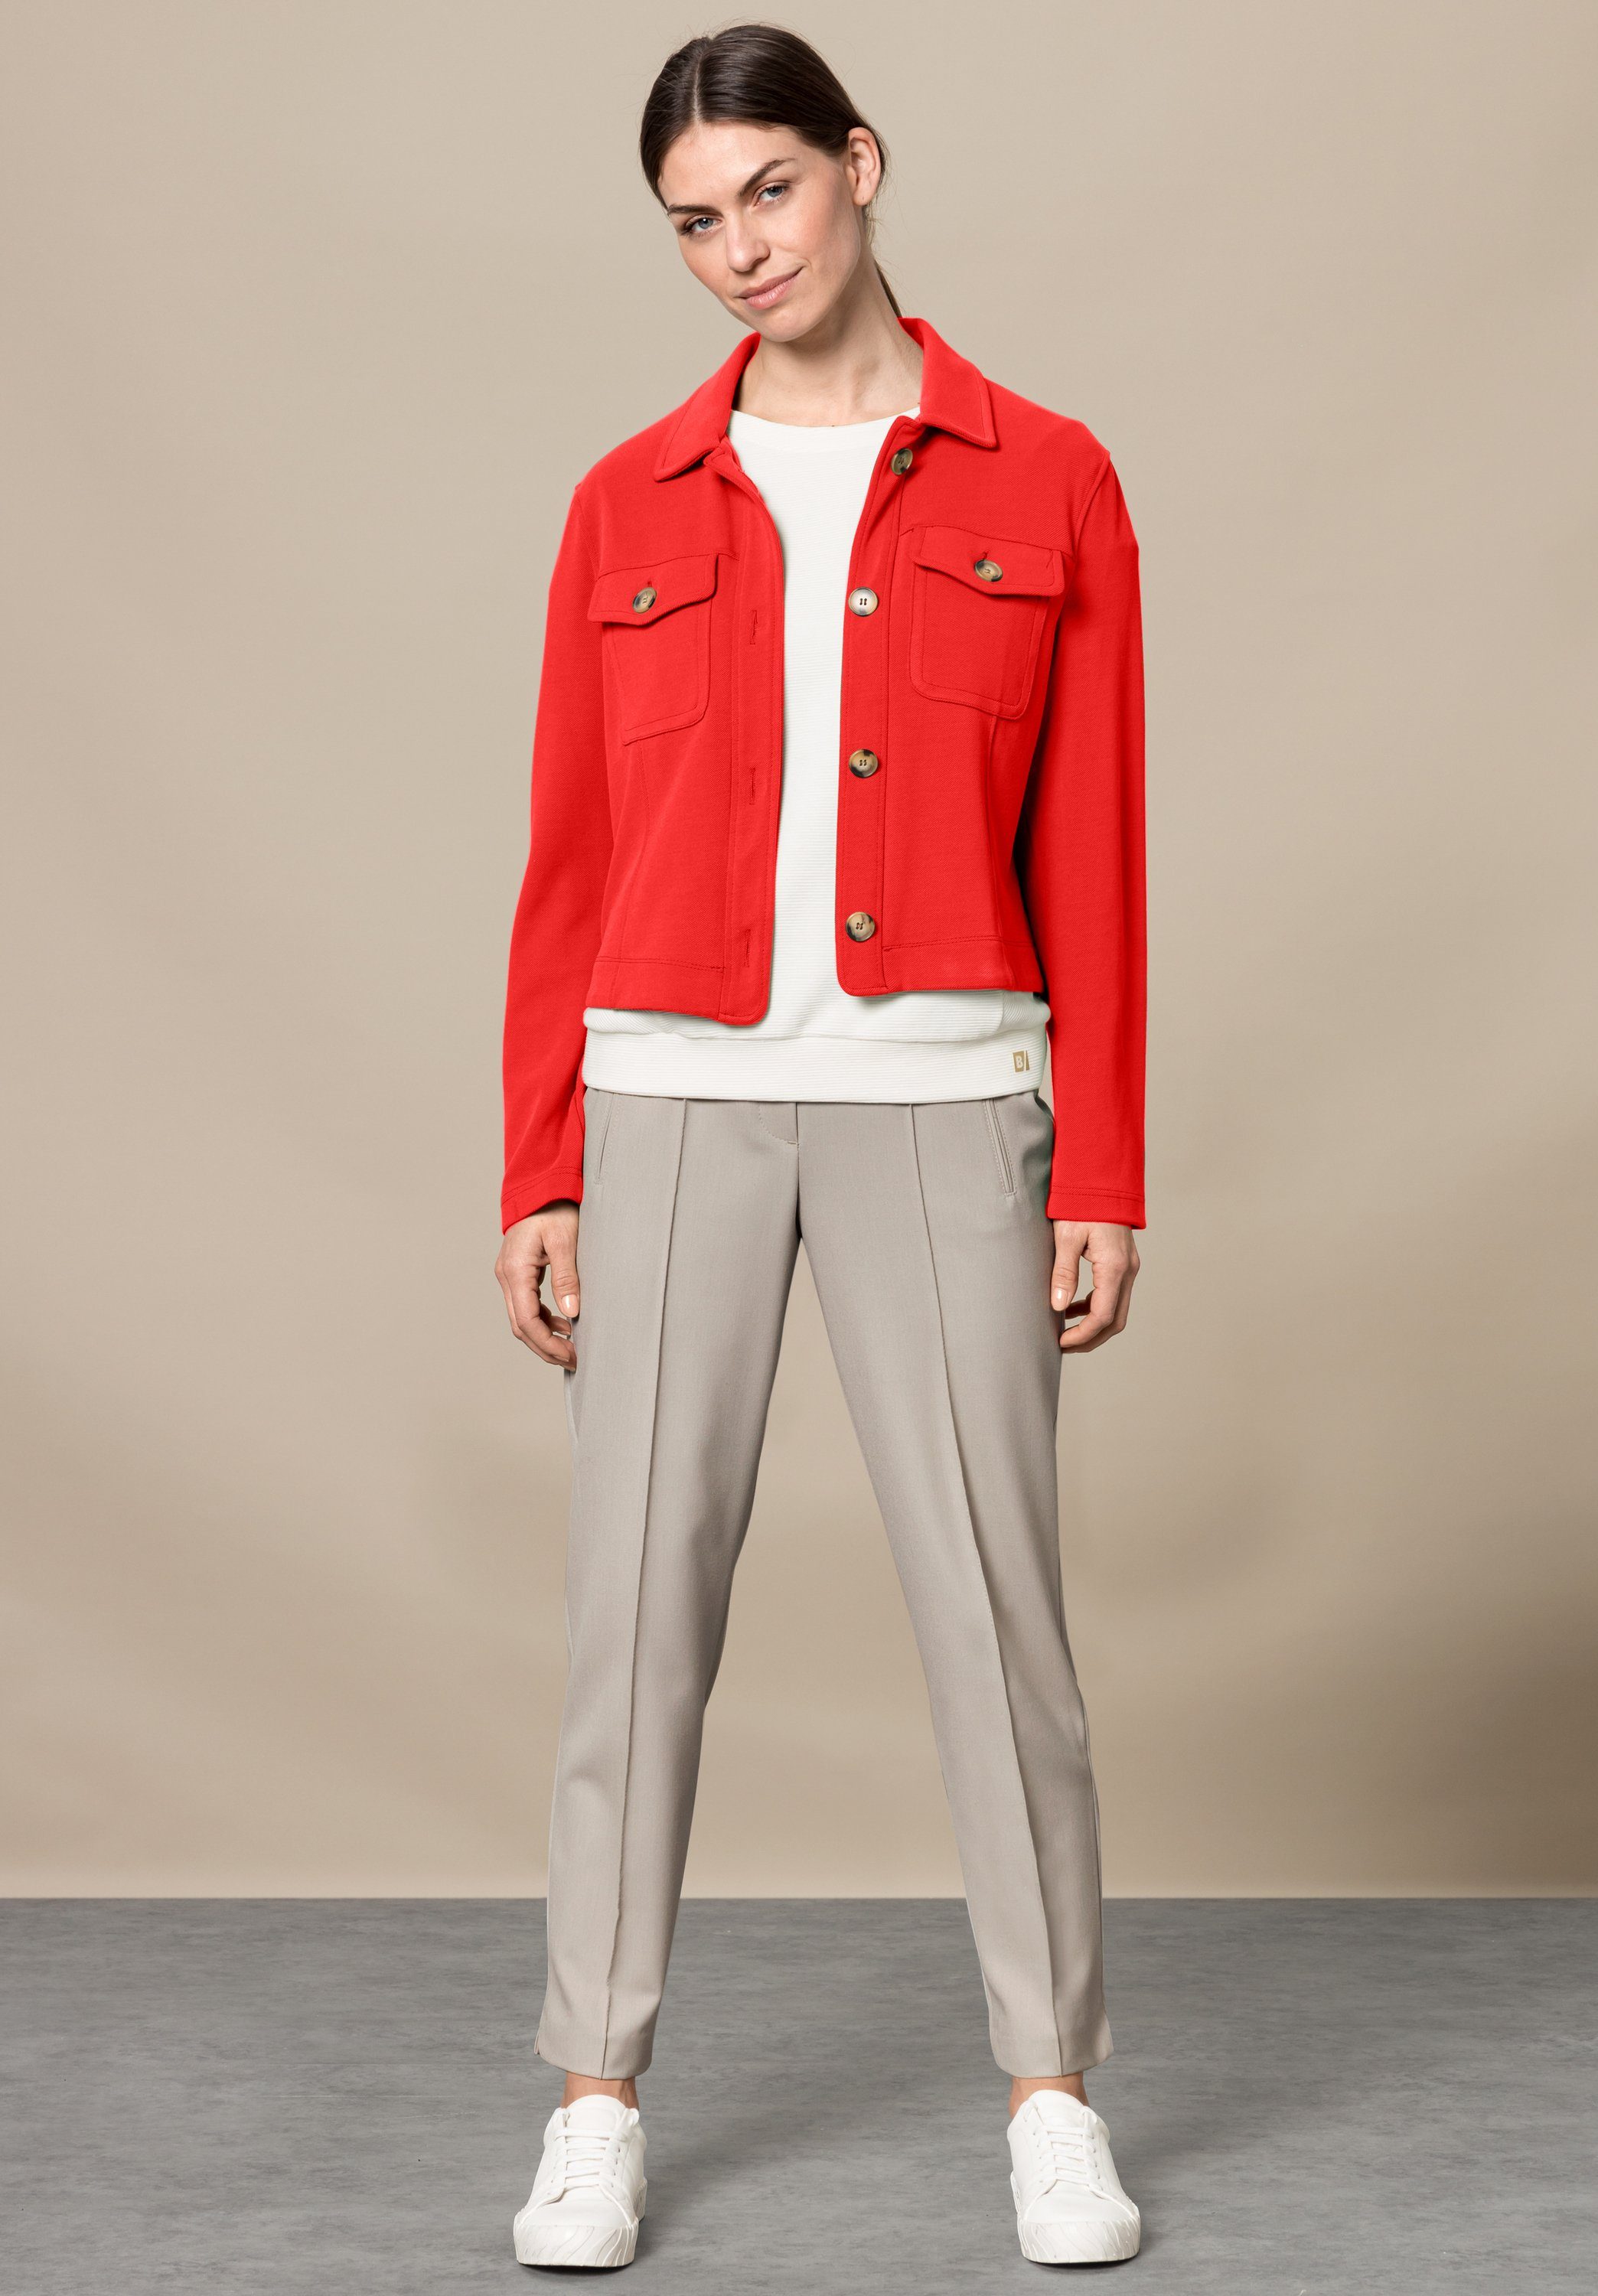 Trendfarbe in stylischen Kurzjacke Details fire MIRANDA mit angesagter bianca